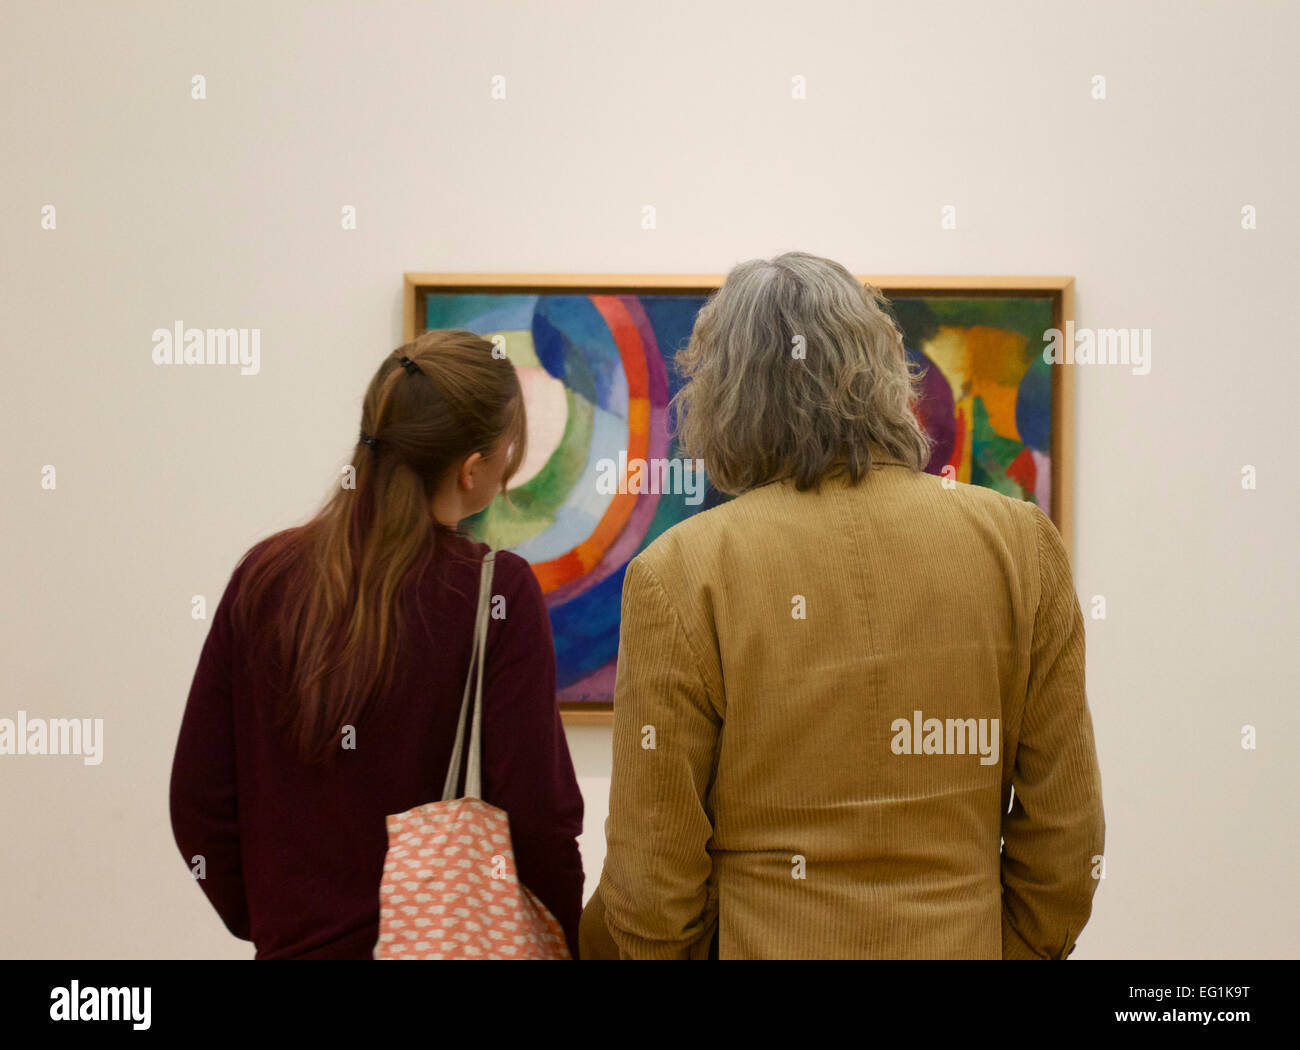 Deux personnes regardant une peinture dans un musée Banque D'Images